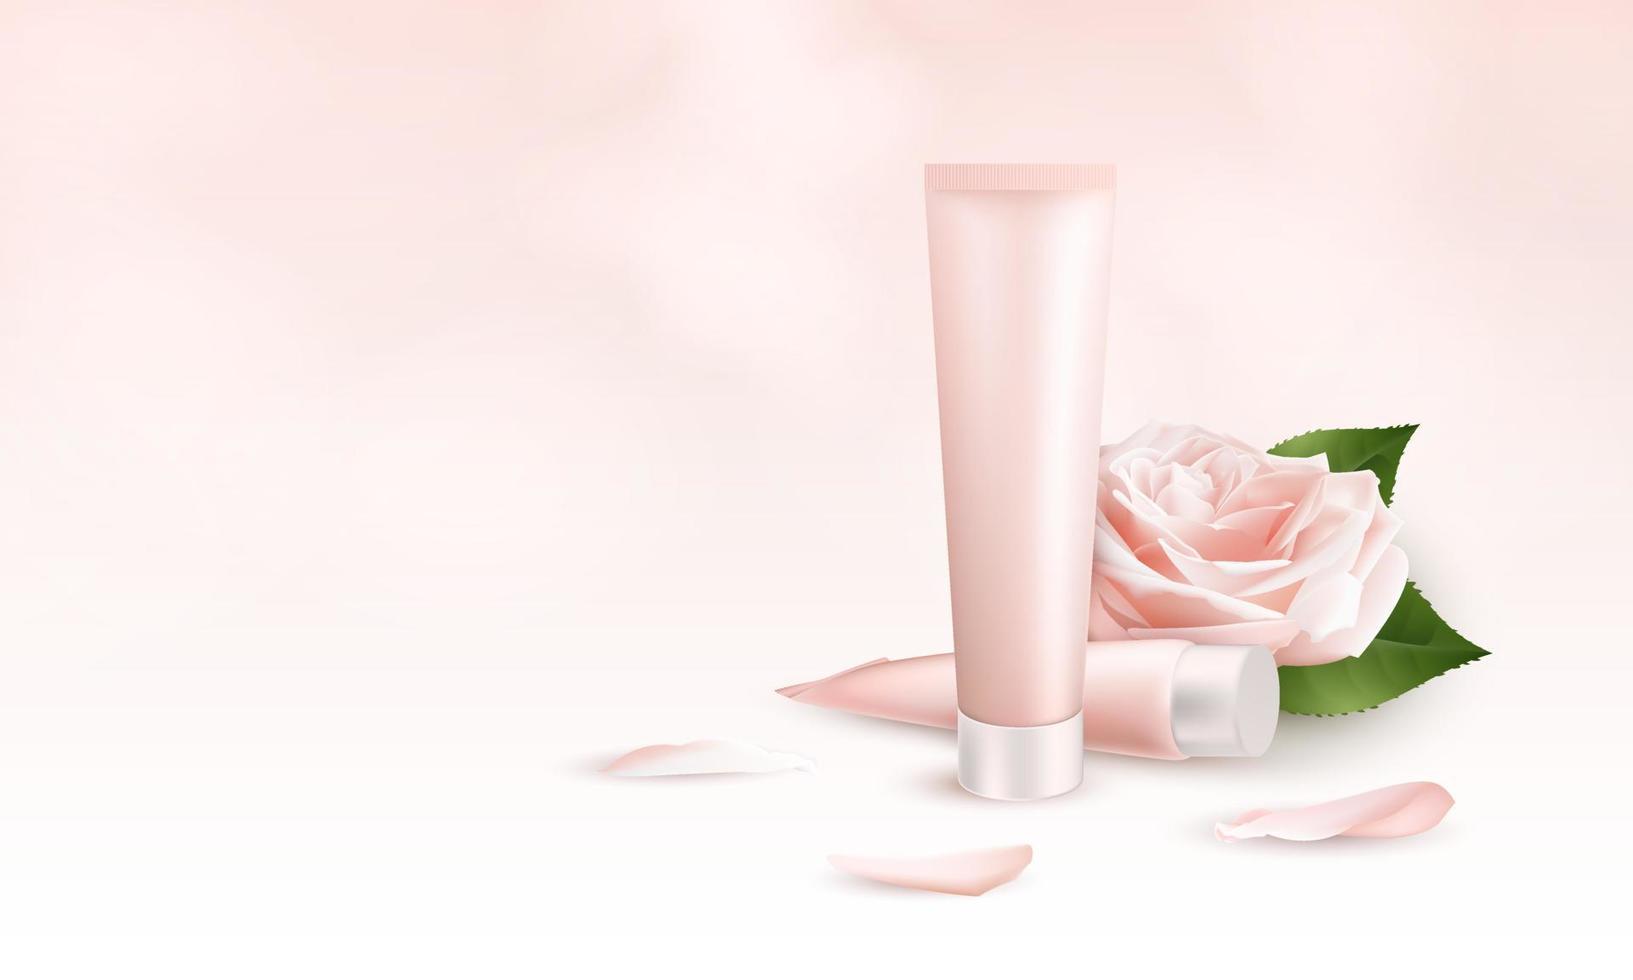 realistisk 3d-bannermall för hudvårdskräm. annonsförpackning mockup för kosmetiska och medicinska produkter med två tuber grädde, blomma och kronblad ros. vektor illustration